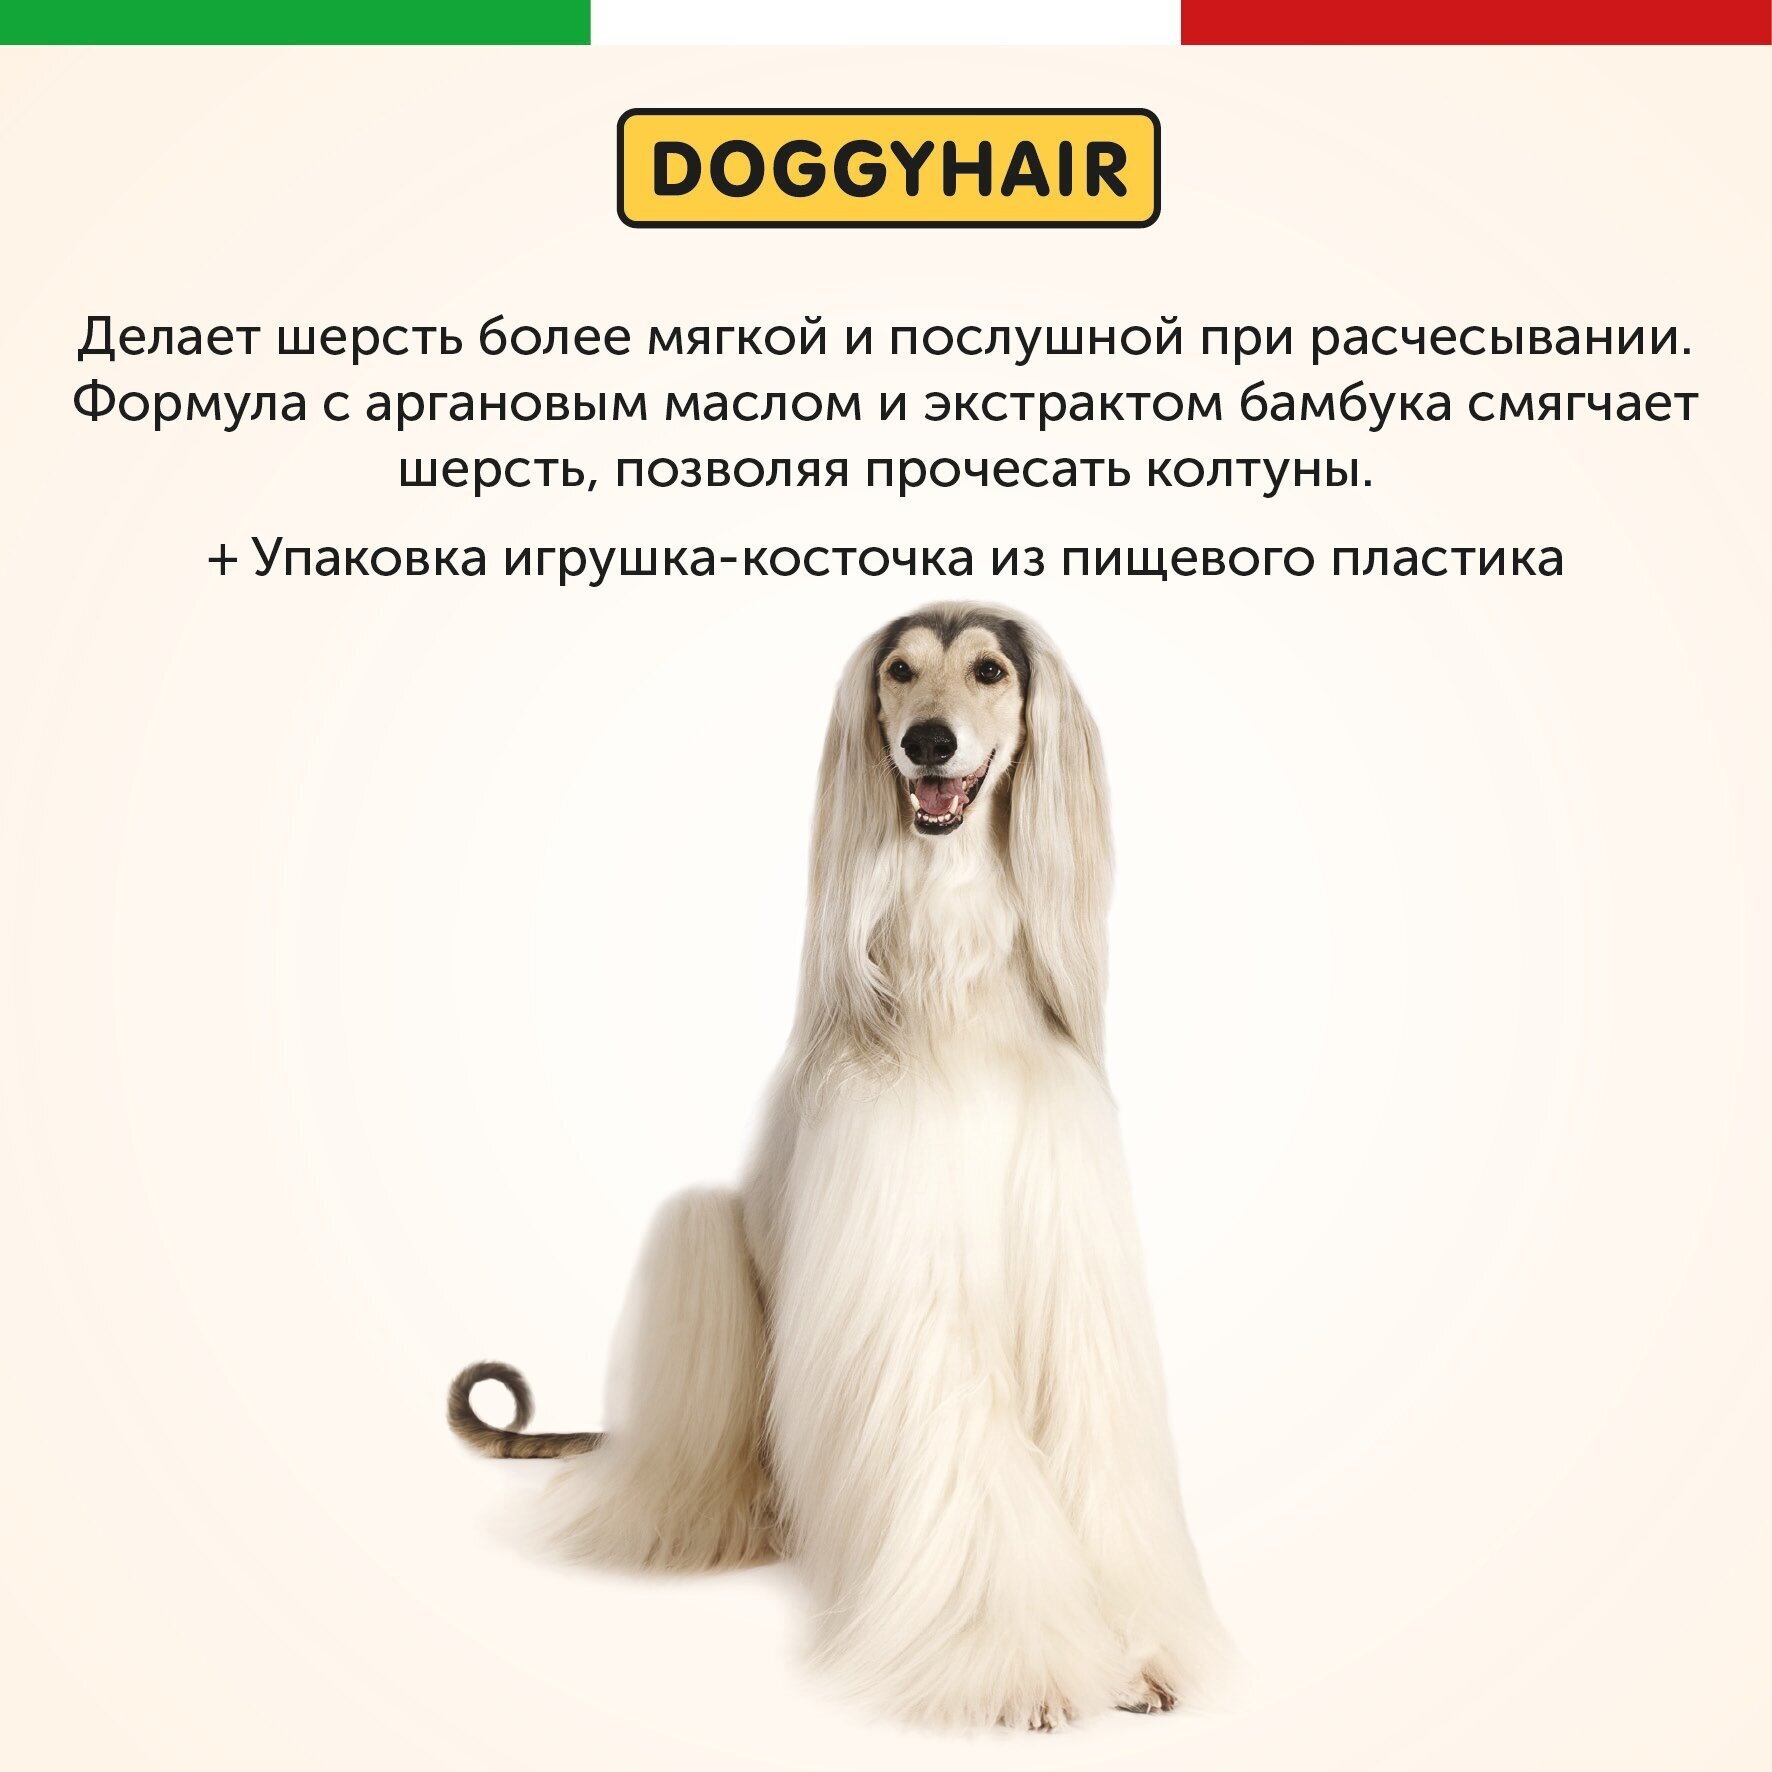 Doggyhair Шампунь для легкого расчесывания шерсти собак, для длинношерстных пород - фотография № 3